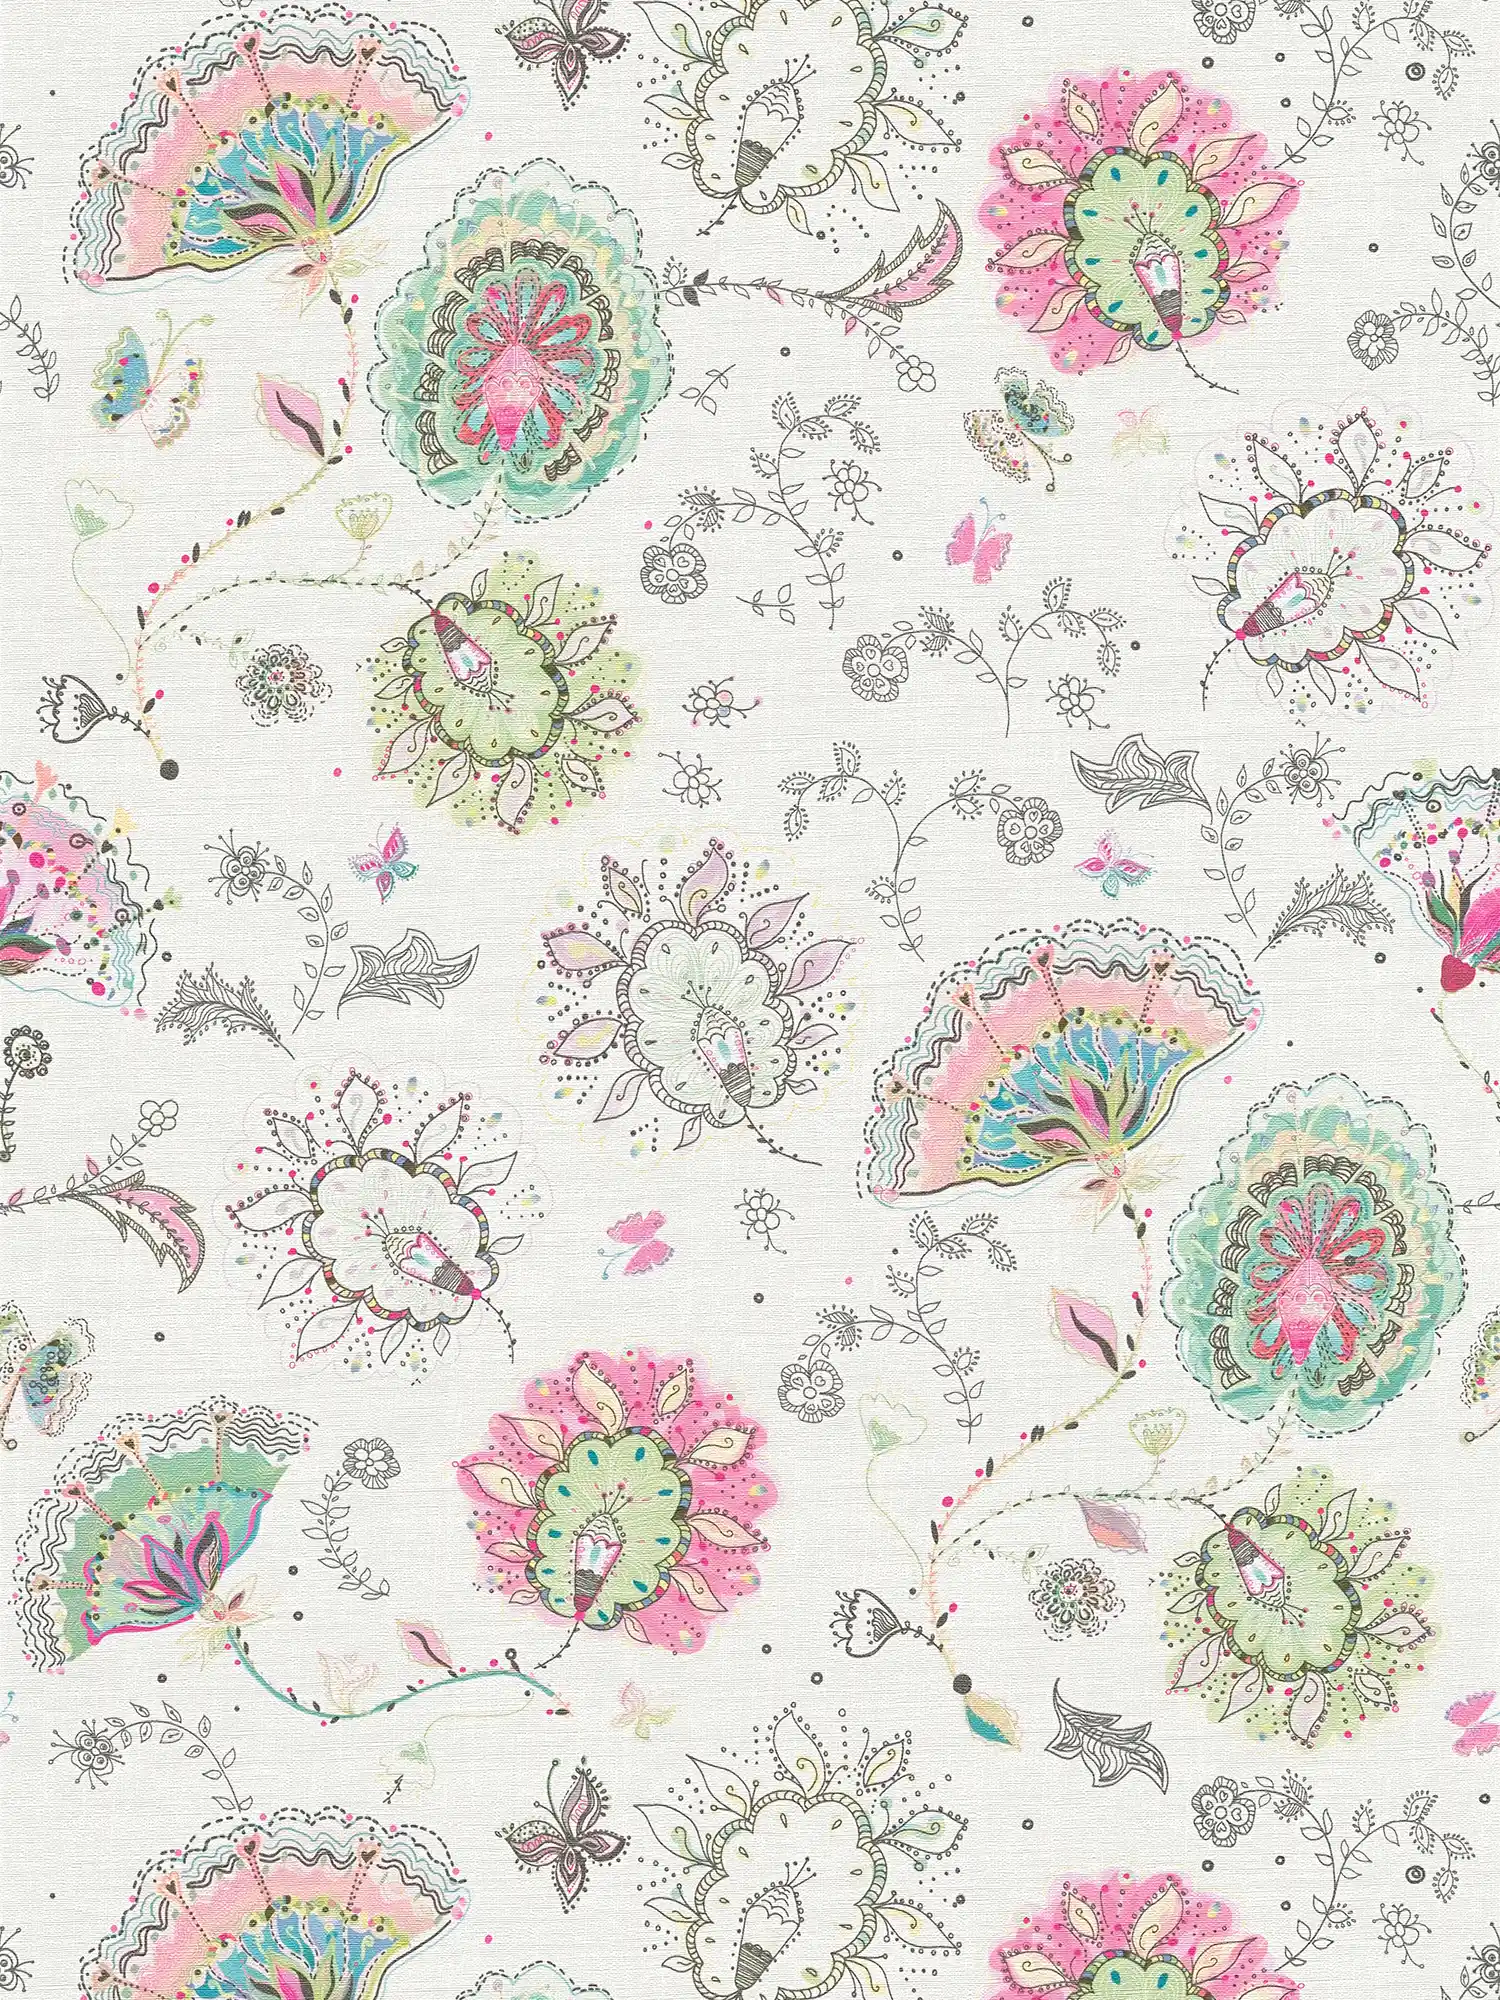 Papier peint à motifs floraux dans des couleurs vives - crème, vert, rose
